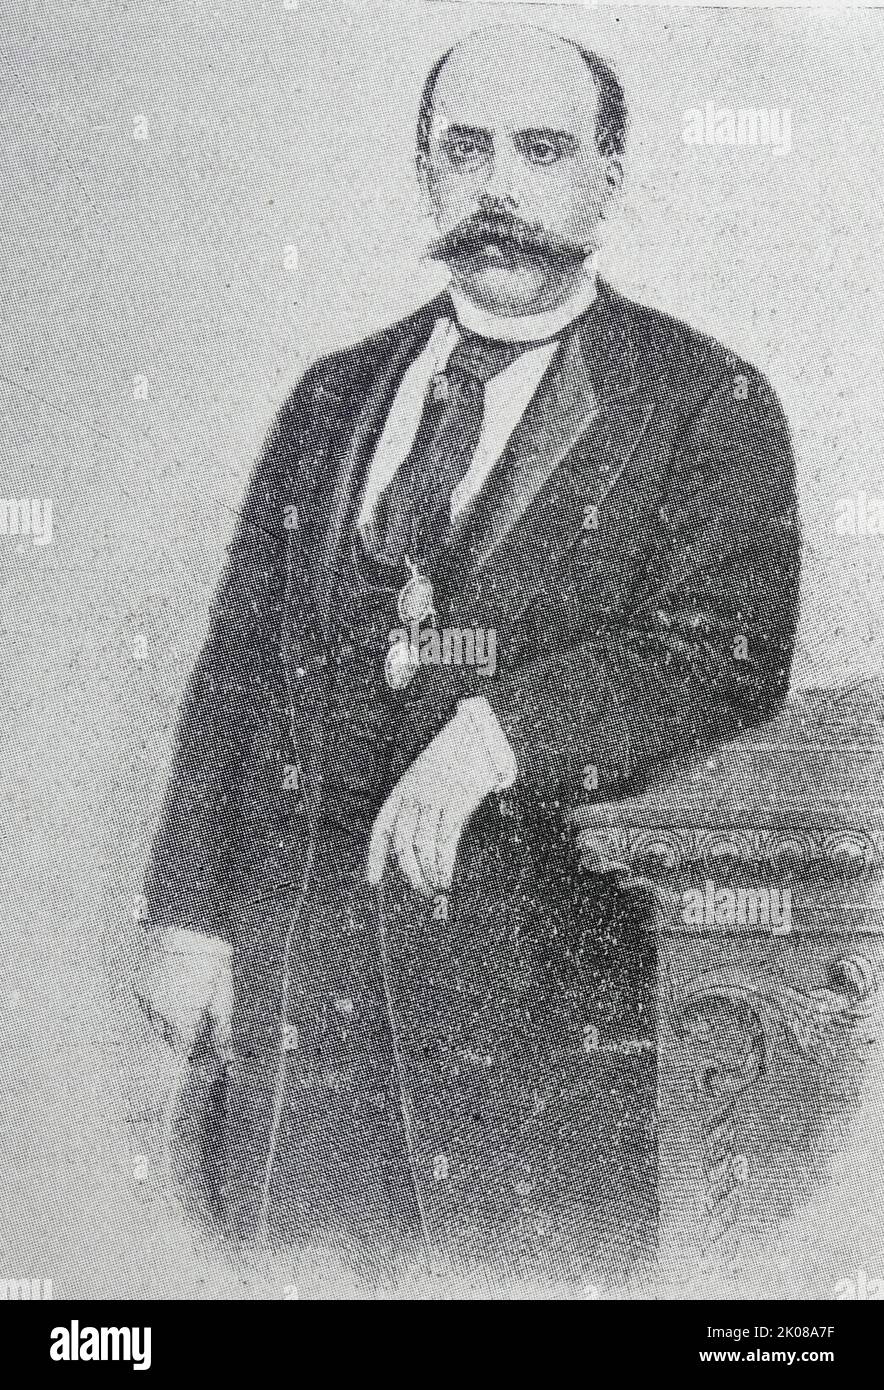 Don Emilio Castelar y Ripoll (7 septembre 1832 - 25 mai 1899) était un politicien républicain espagnol et un président de la première République espagnole Banque D'Images